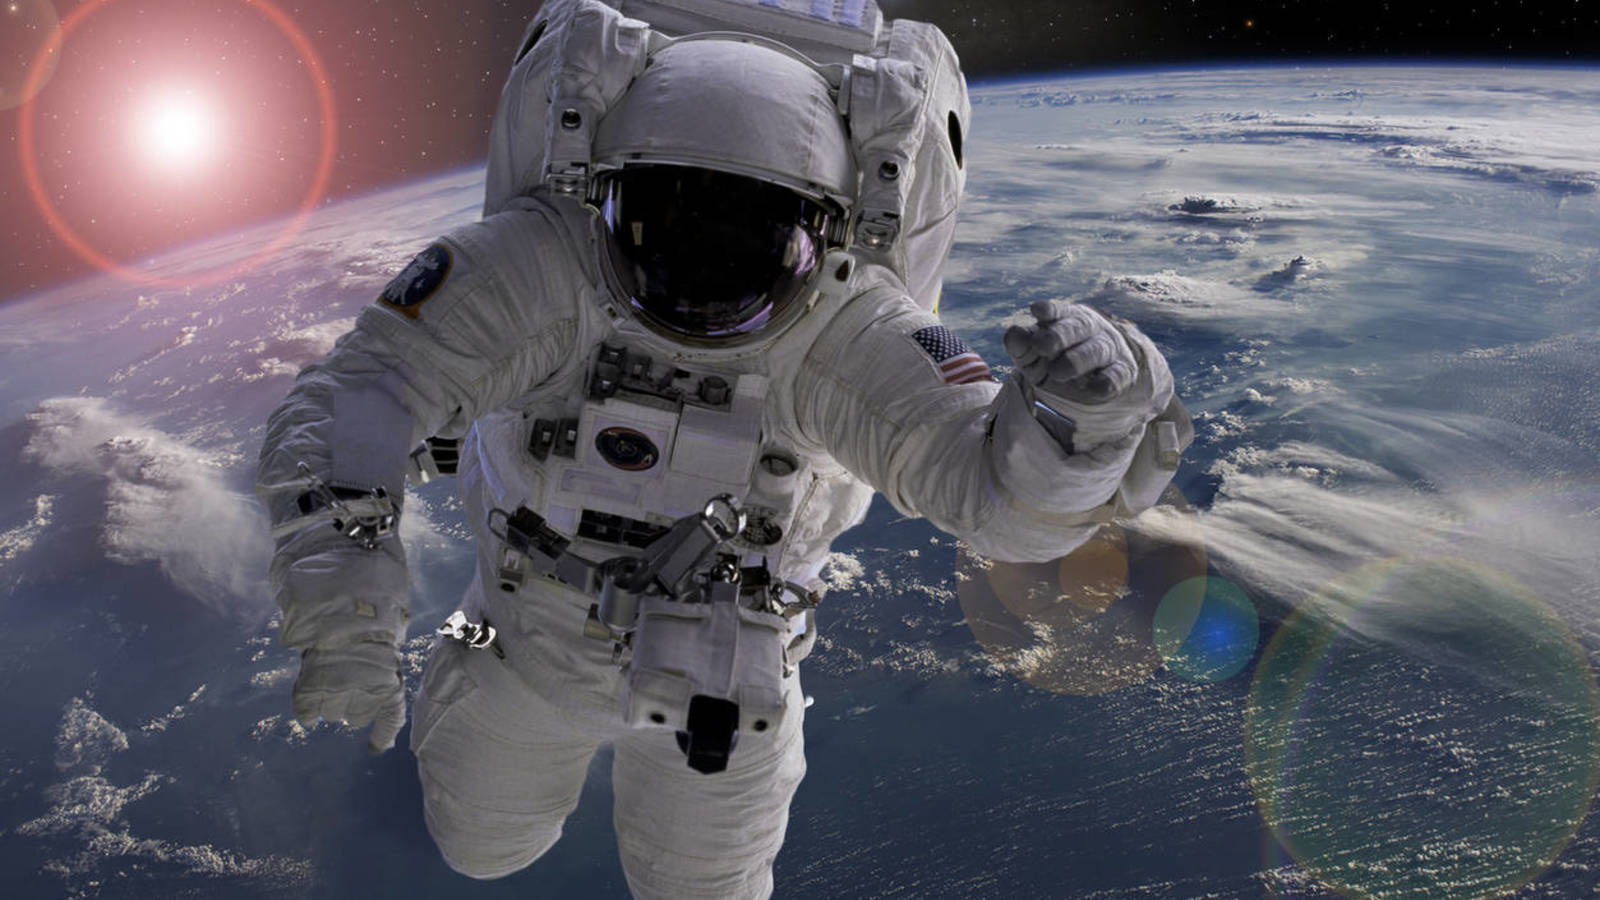 Astronauta de la NASA aplaude ejemplo “mundial” en lucha contra el virus en Nueva York